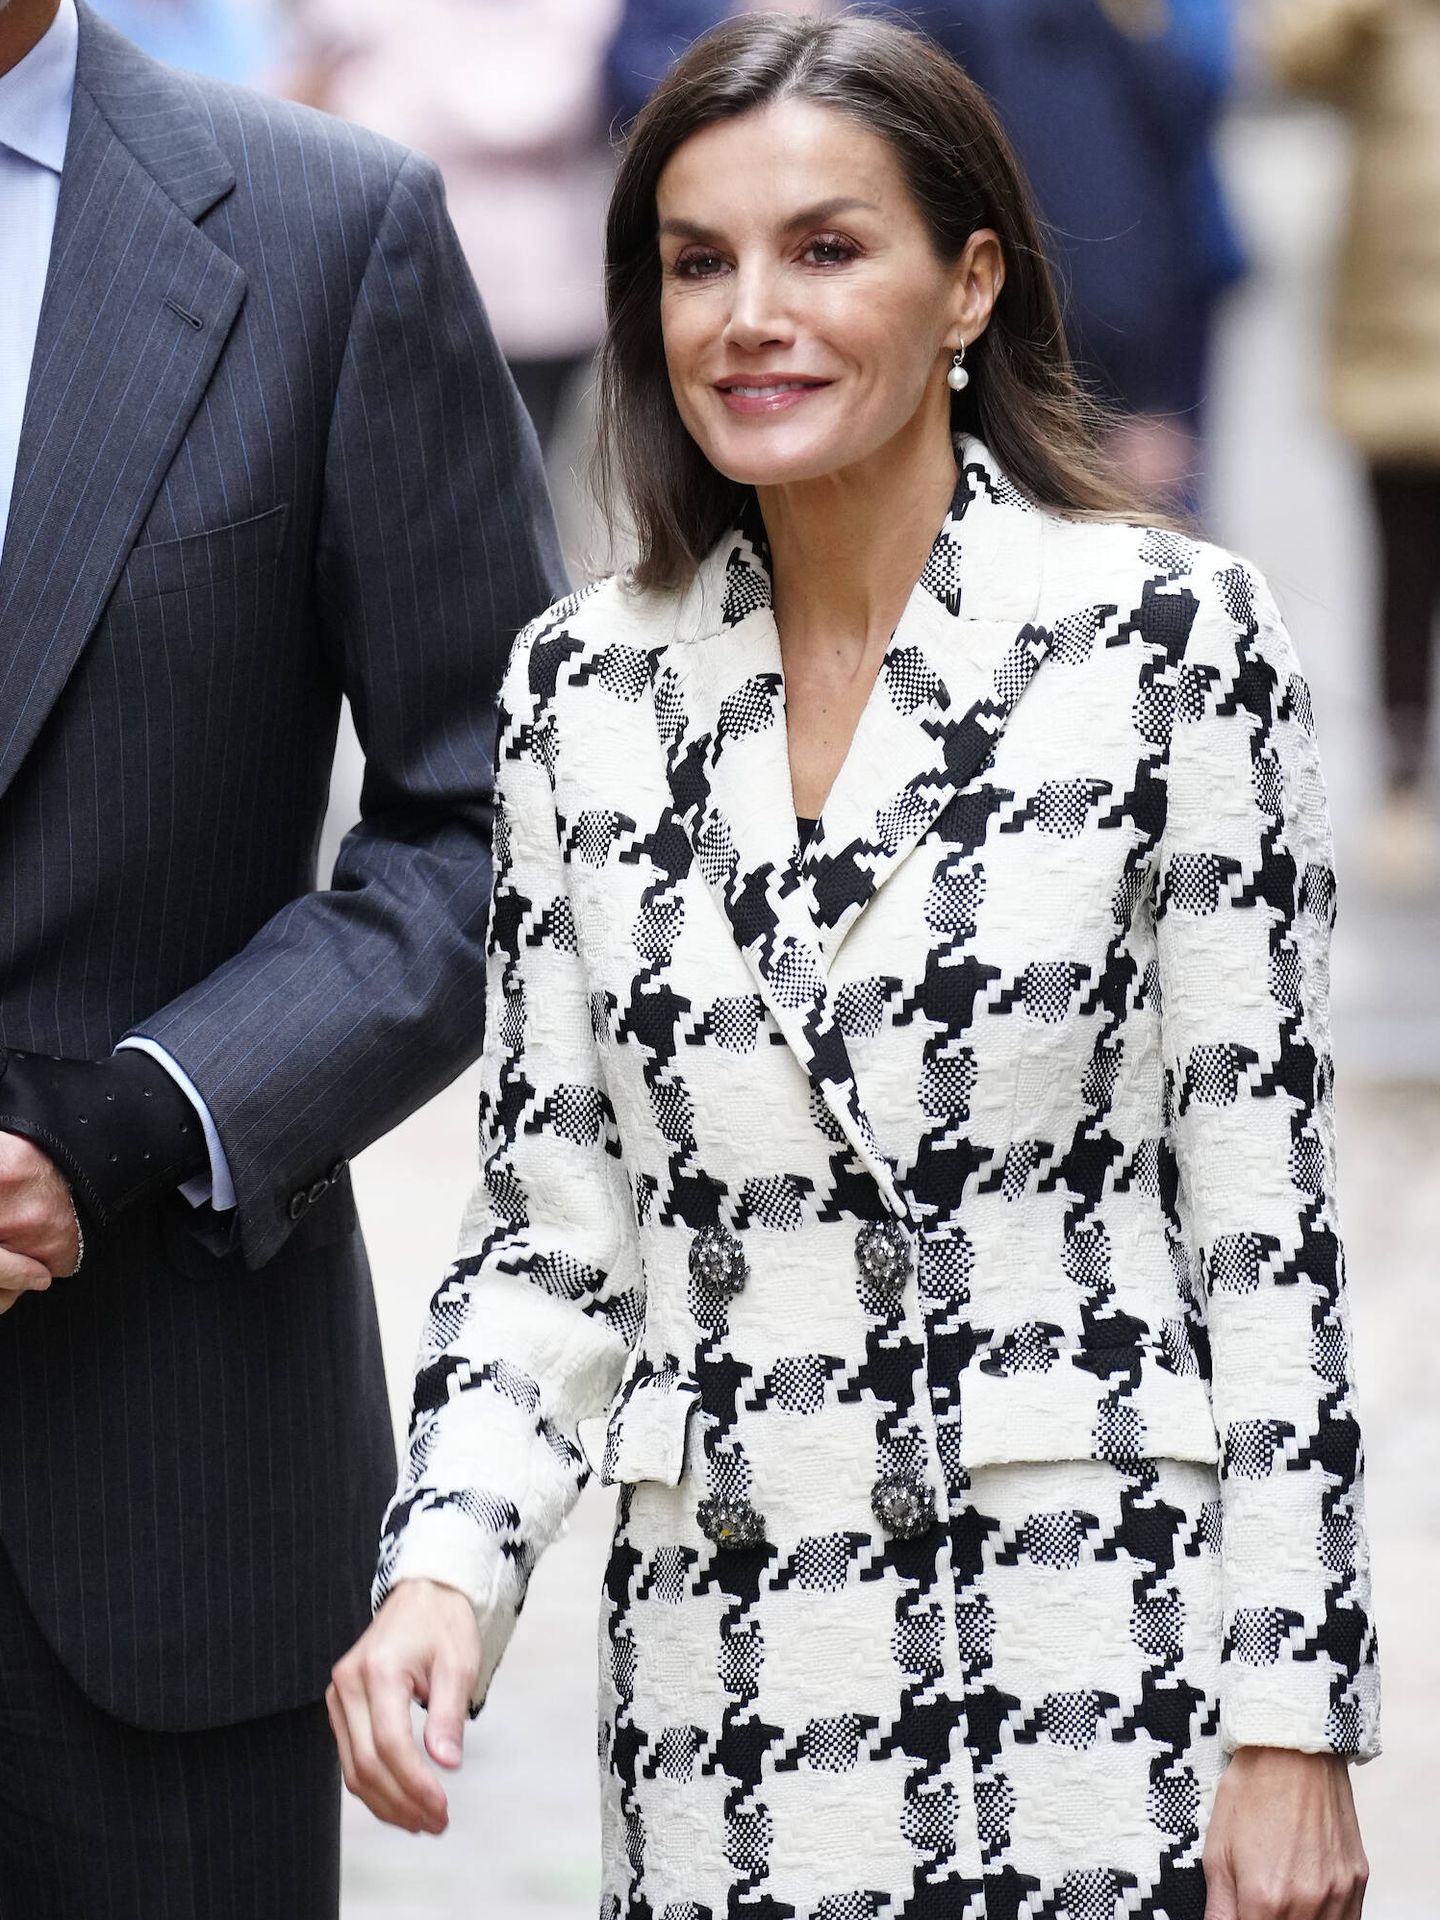 Detalle de la chaqueta de Uterqüe de la reina Letizia. (LP)